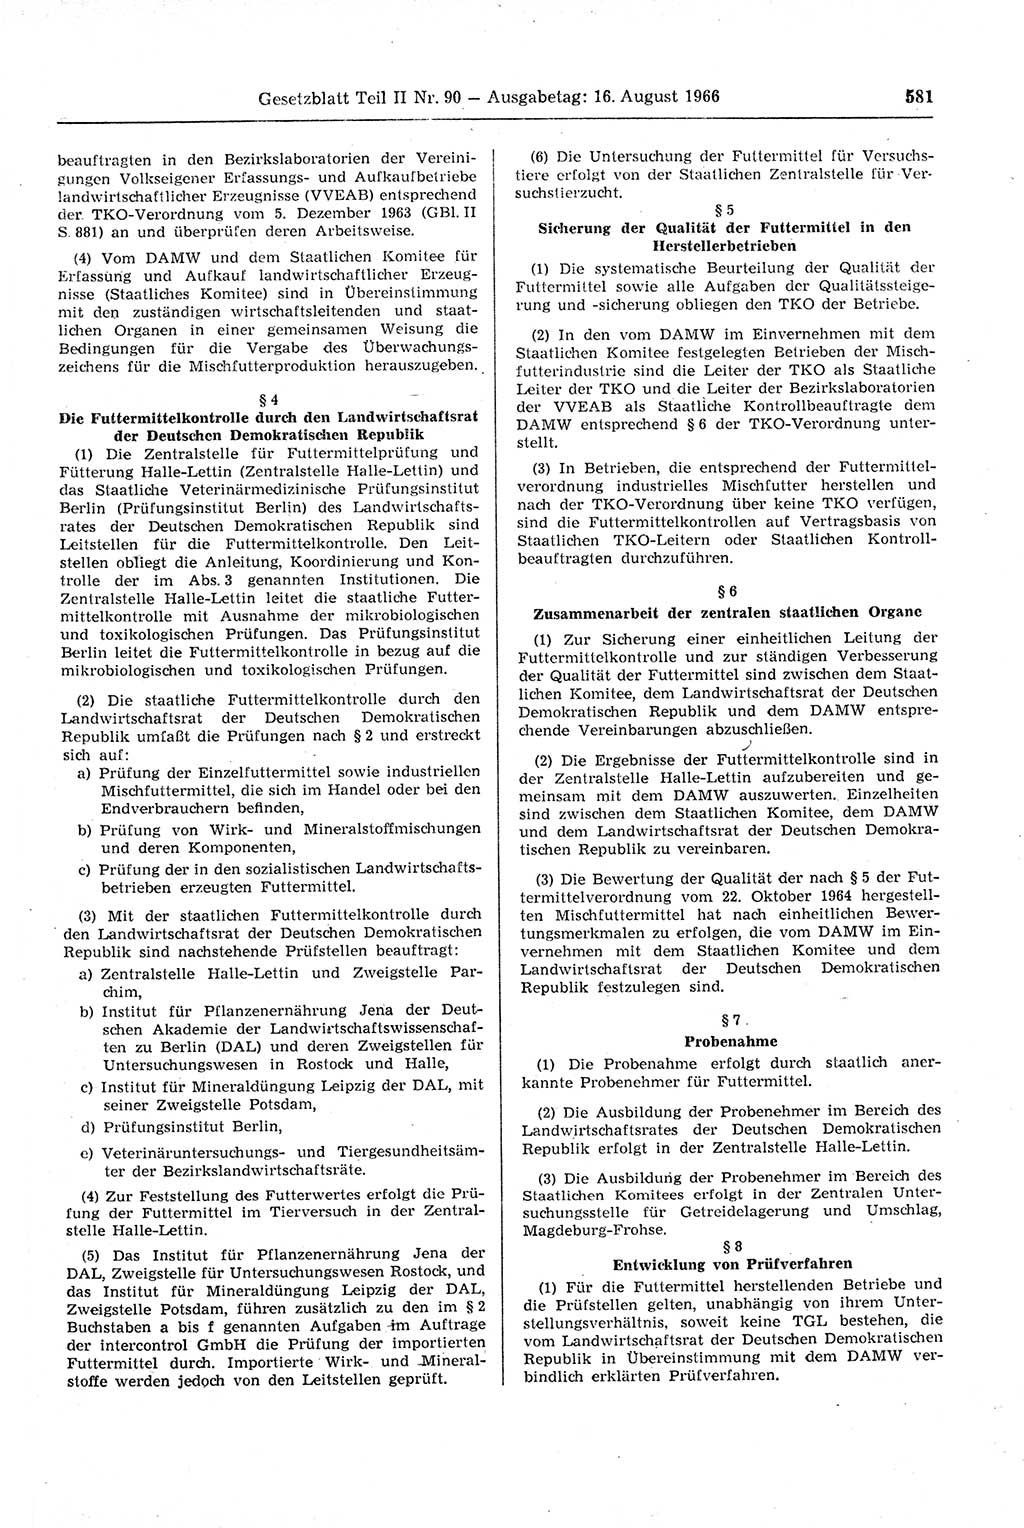 Gesetzblatt (GBl.) der Deutschen Demokratischen Republik (DDR) Teil ⅠⅠ 1966, Seite 581 (GBl. DDR ⅠⅠ 1966, S. 581)